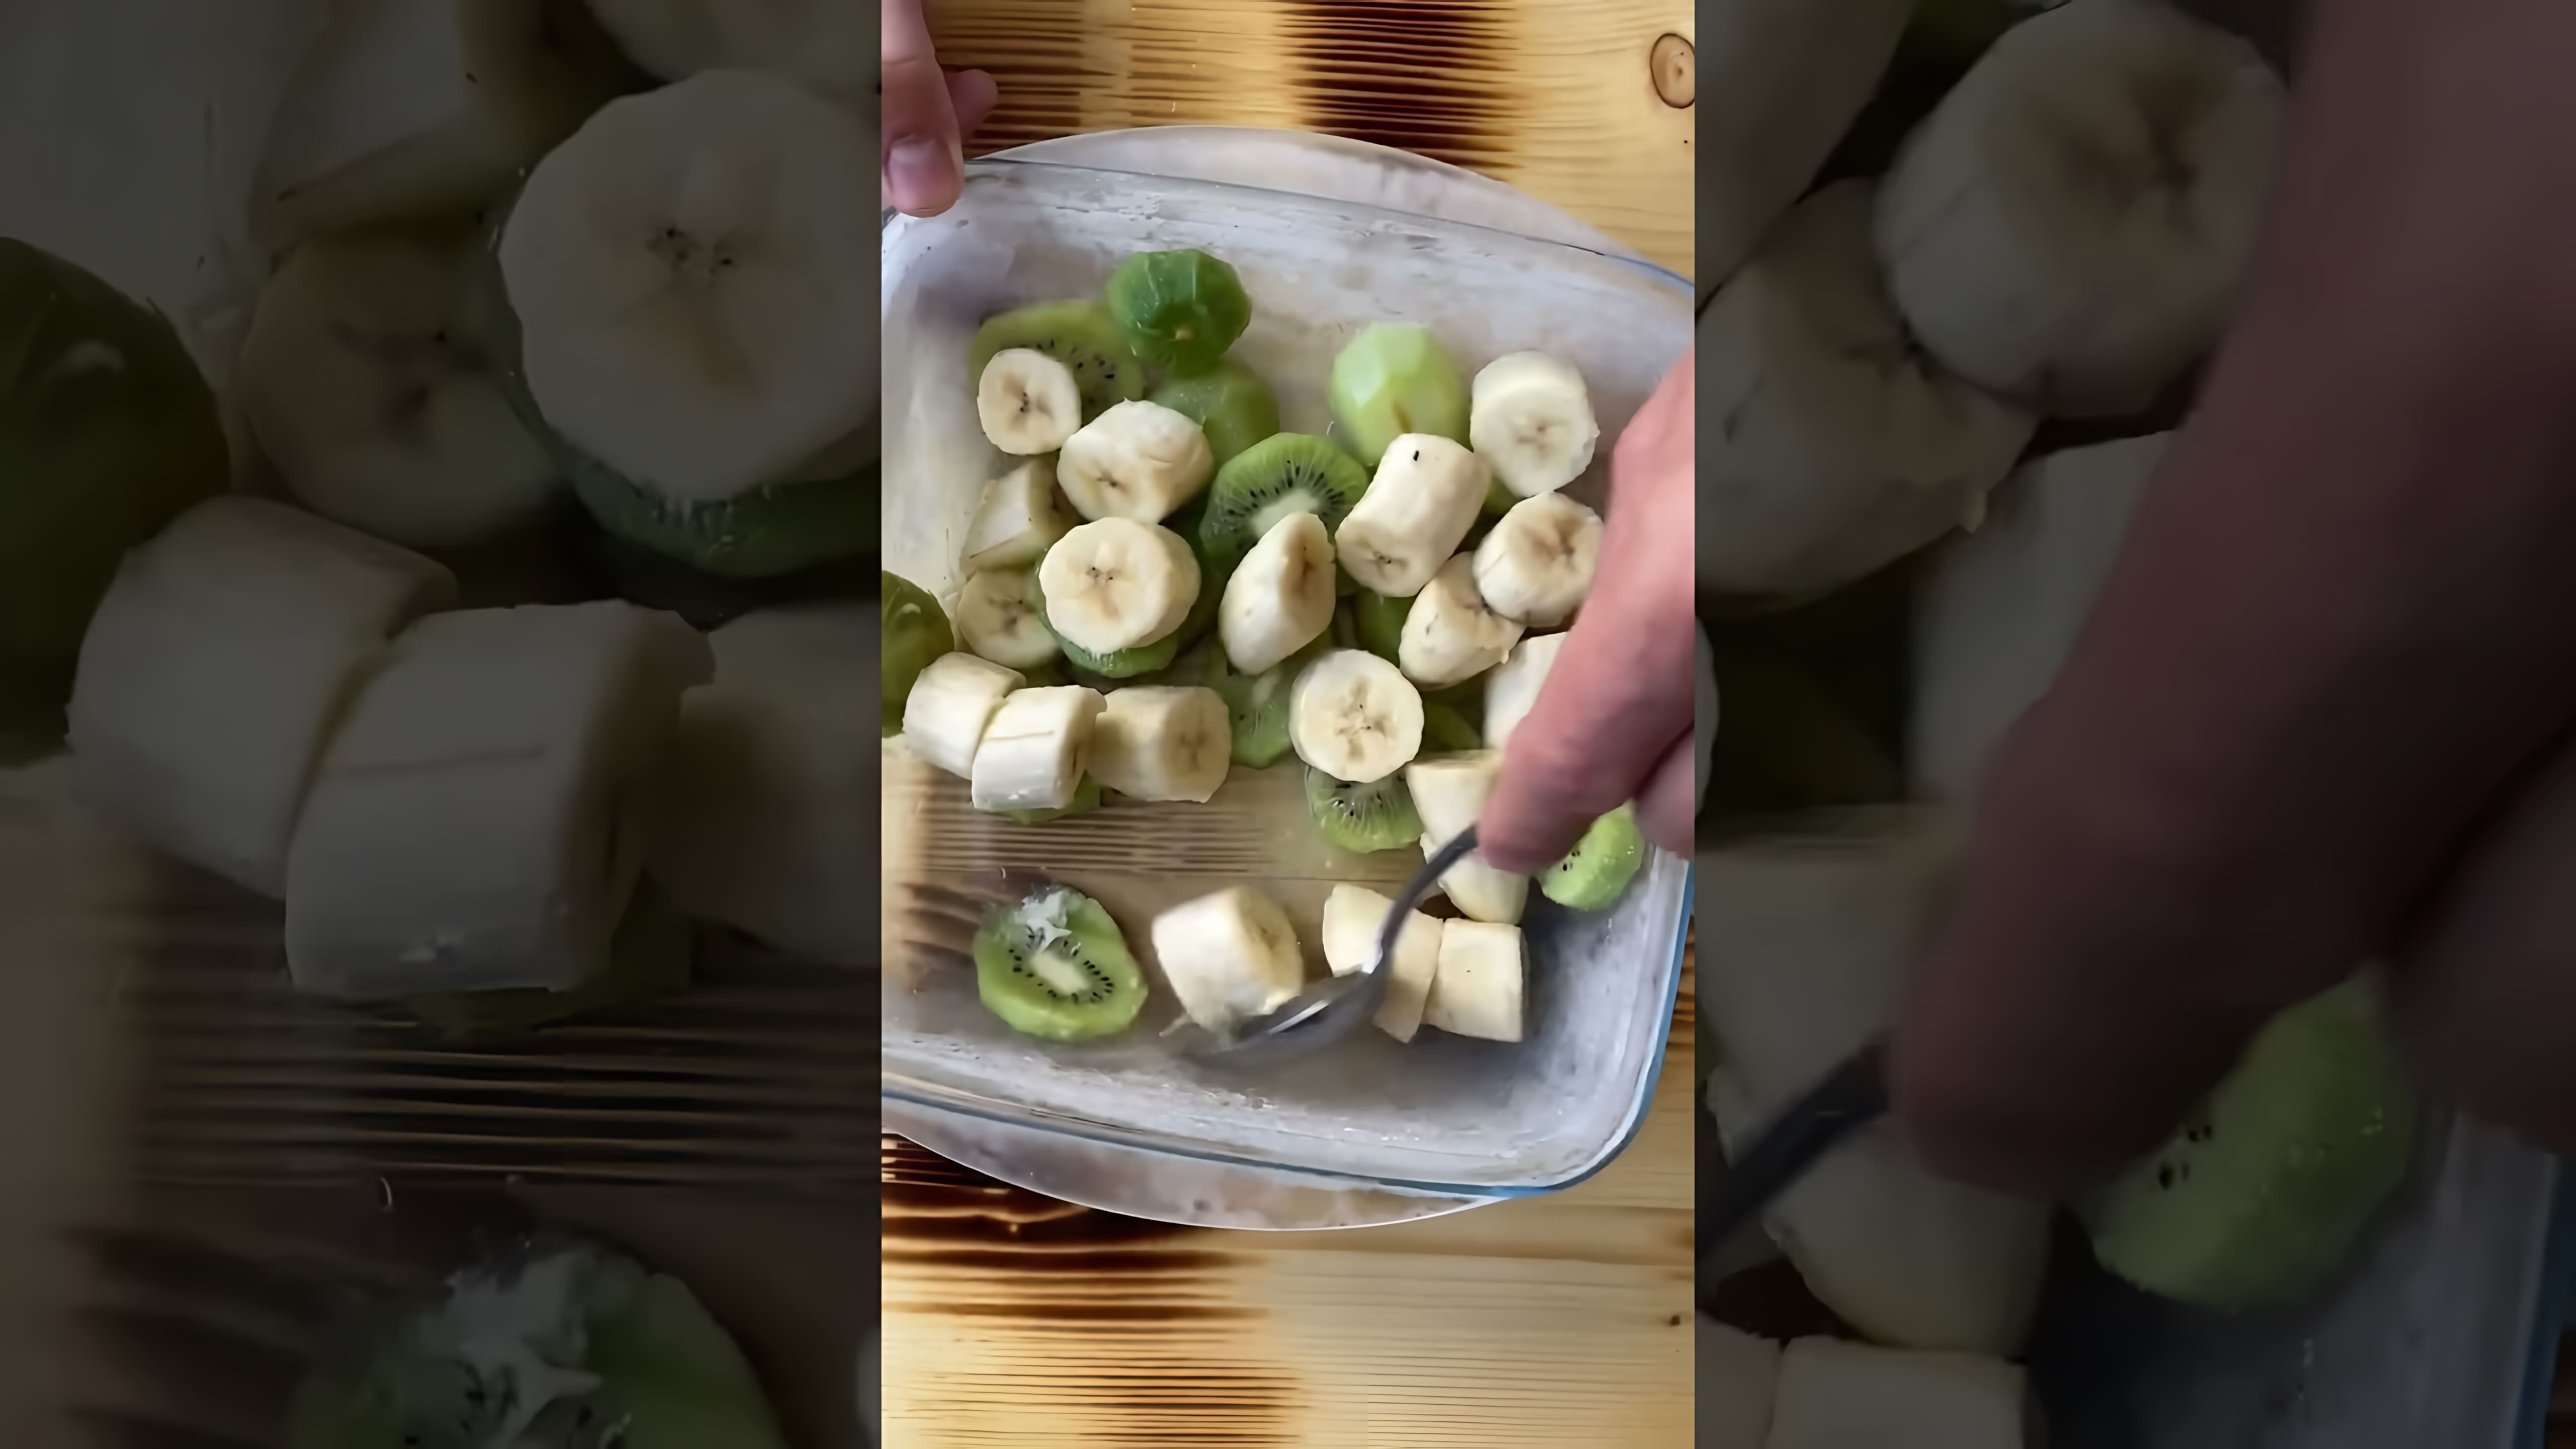 В этом видео демонстрируется процесс приготовления мороженого из киви и банана